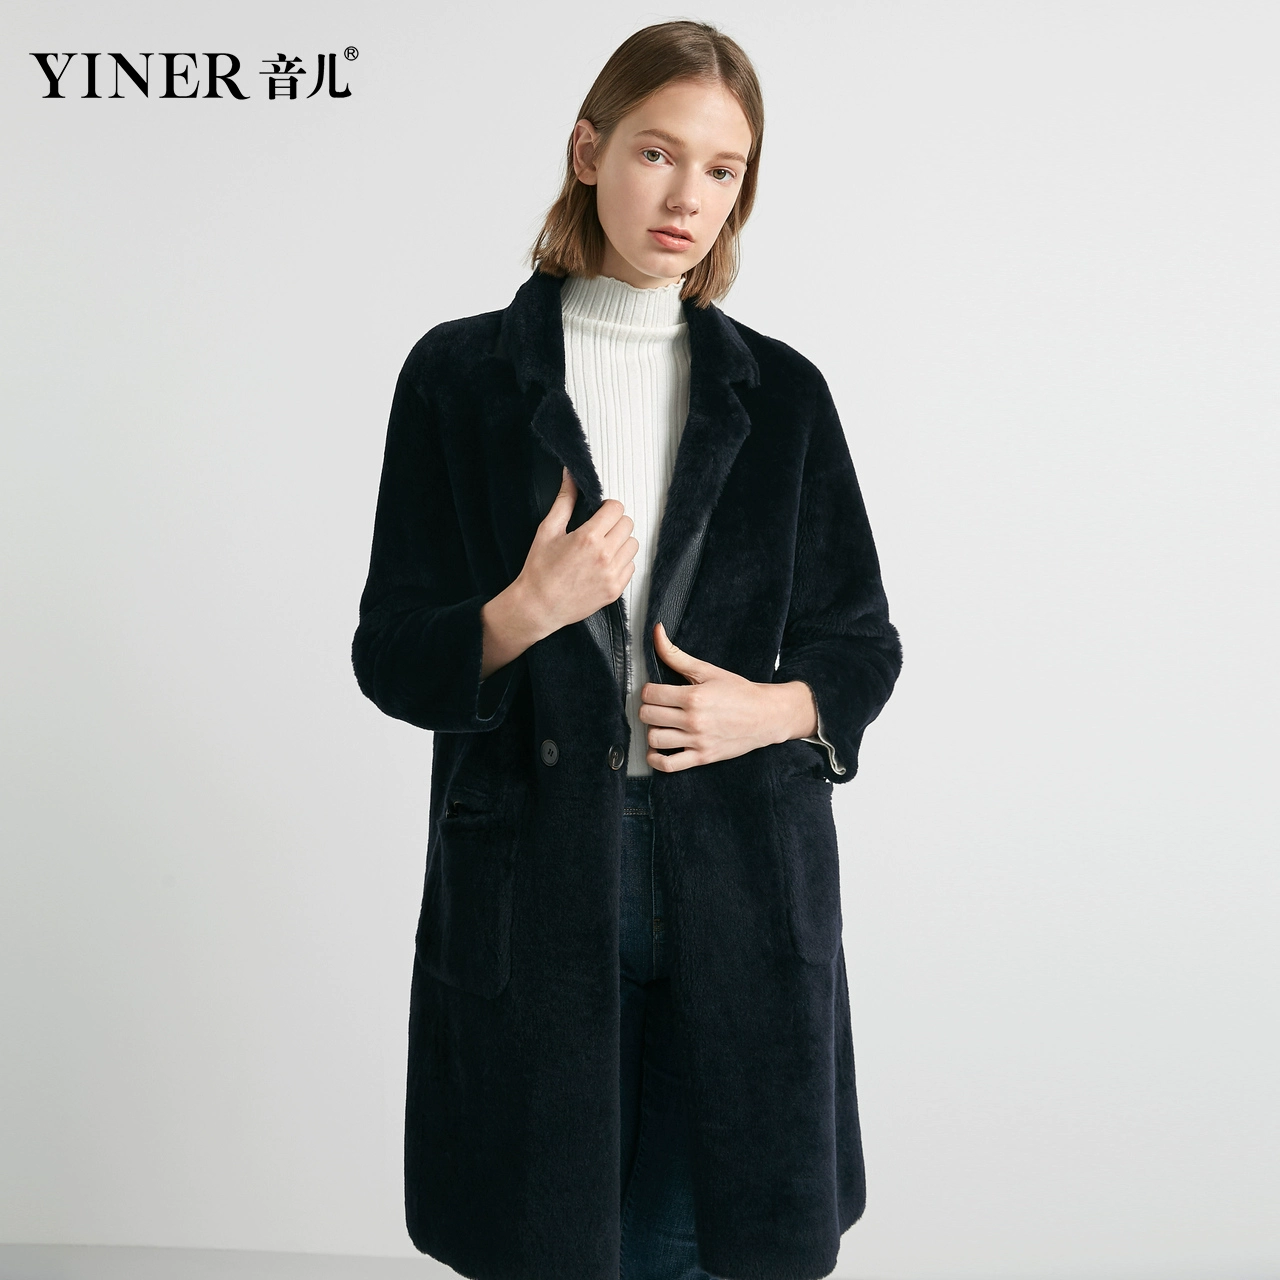 Cửa hàng Reverse-YINER Yiner 2019 mùa đông mới trước và sau mặc áo khoác lông cừu - Faux Fur